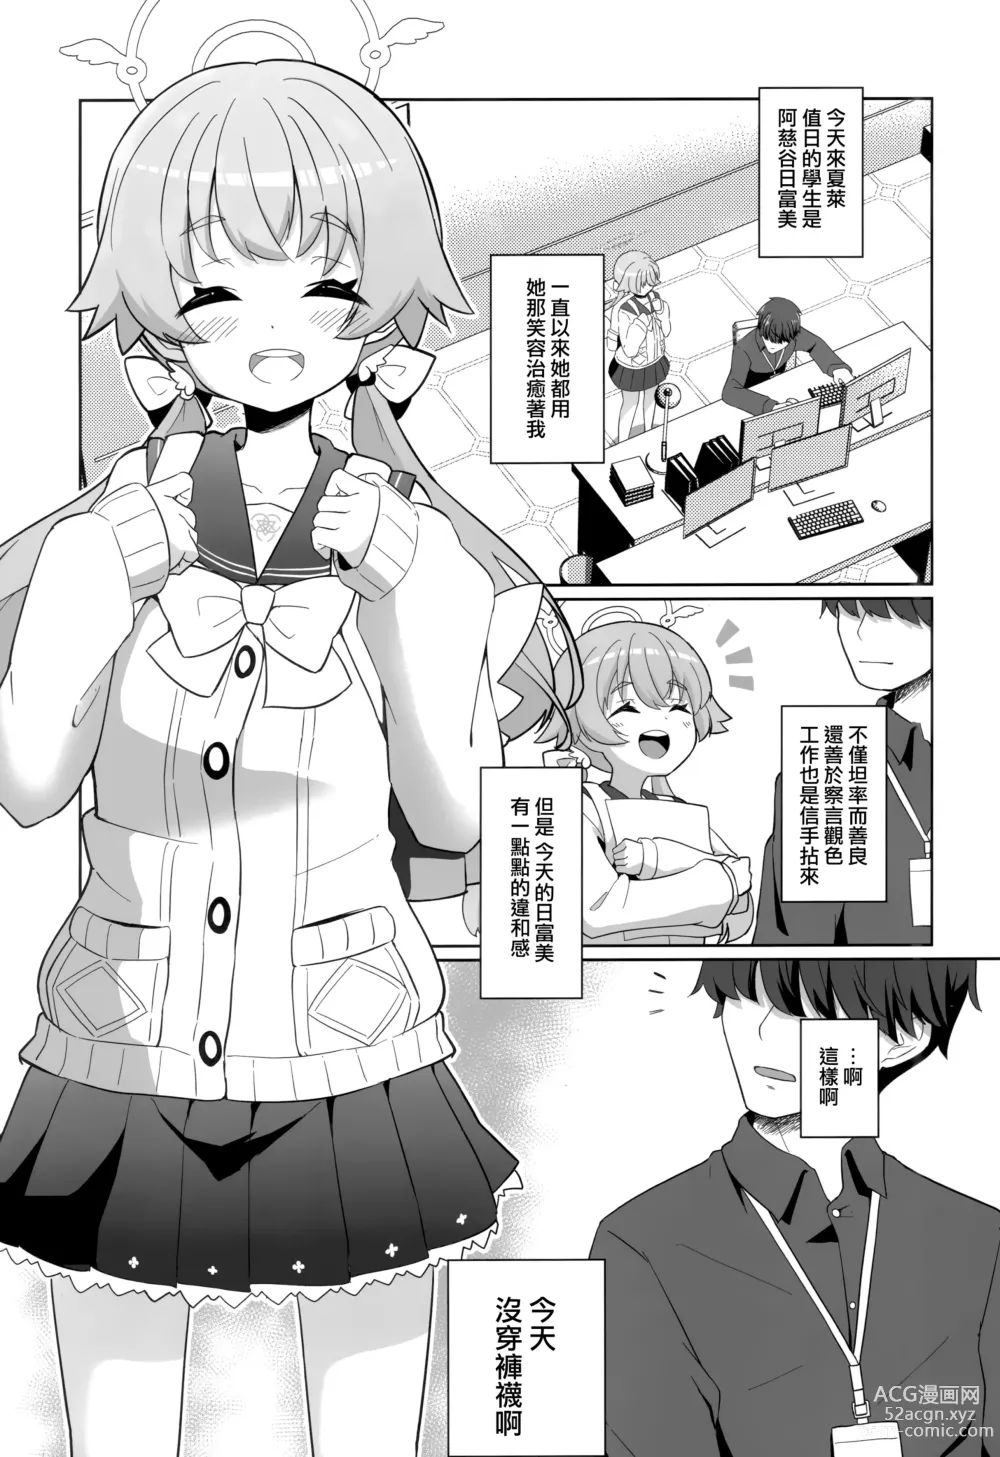 Page 3 of doujinshi Ecchi na Watashi wa Kirai desu ka...?